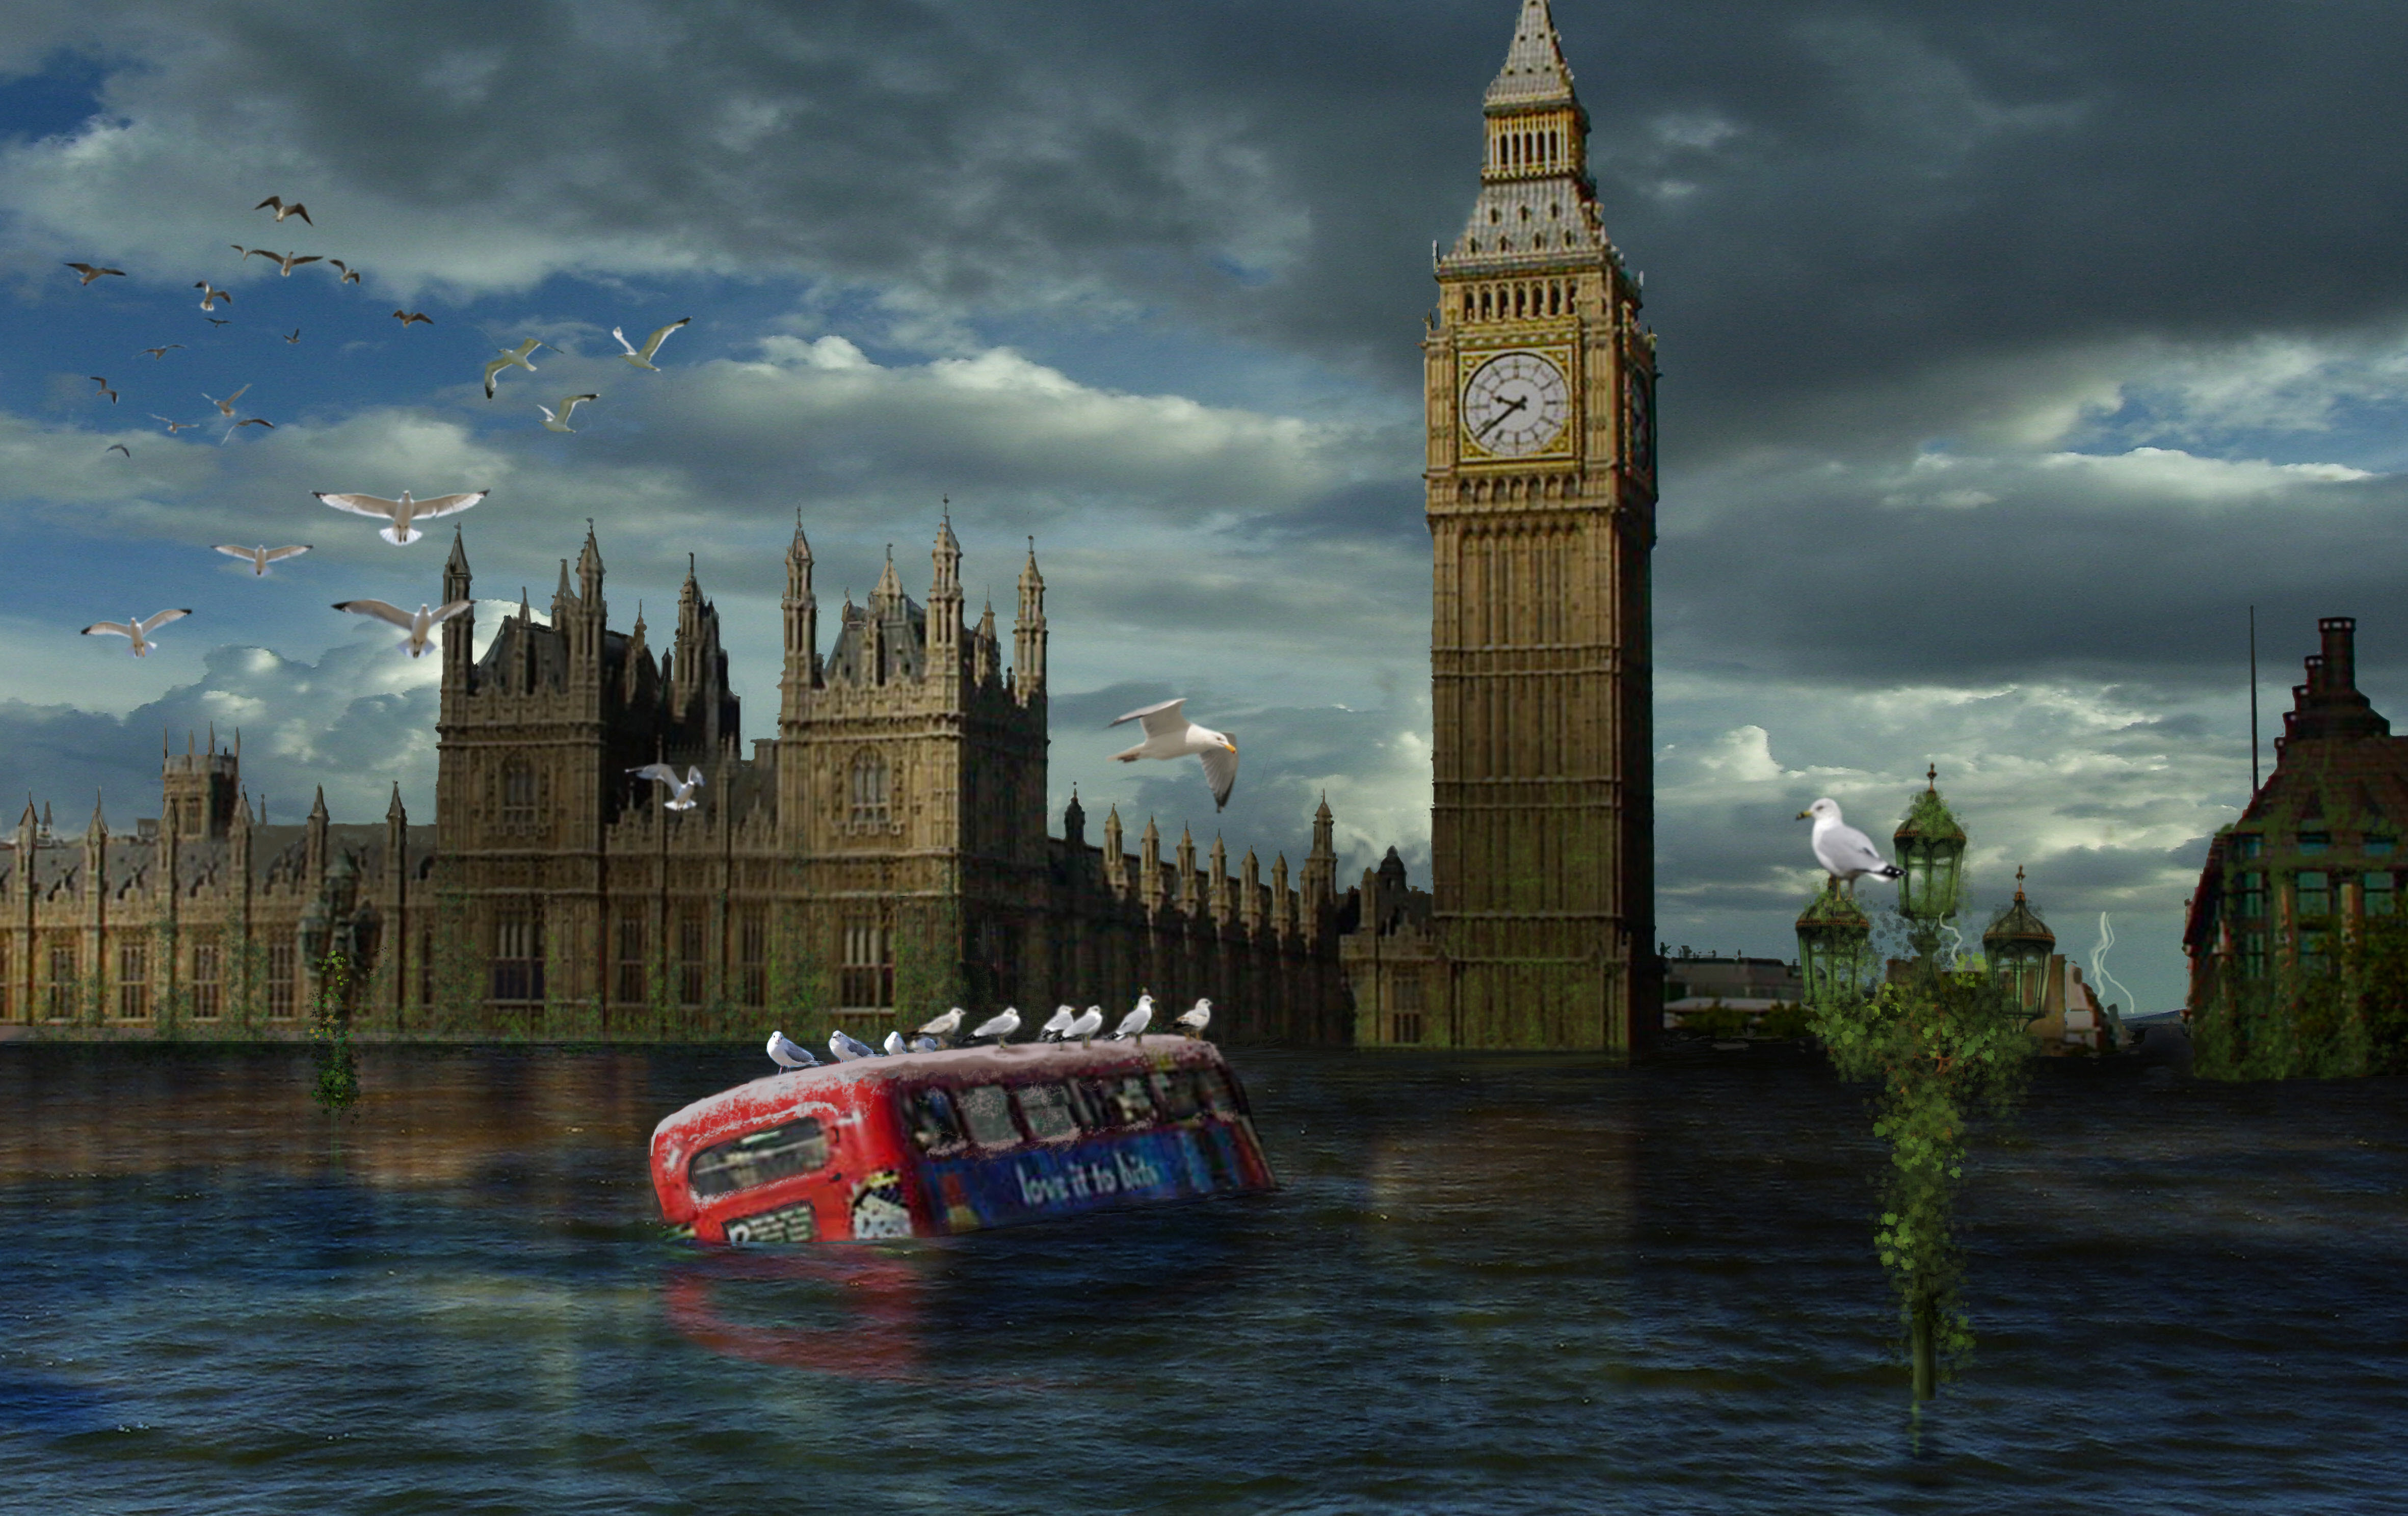 Londoni árvíz egy fantáziarajzon